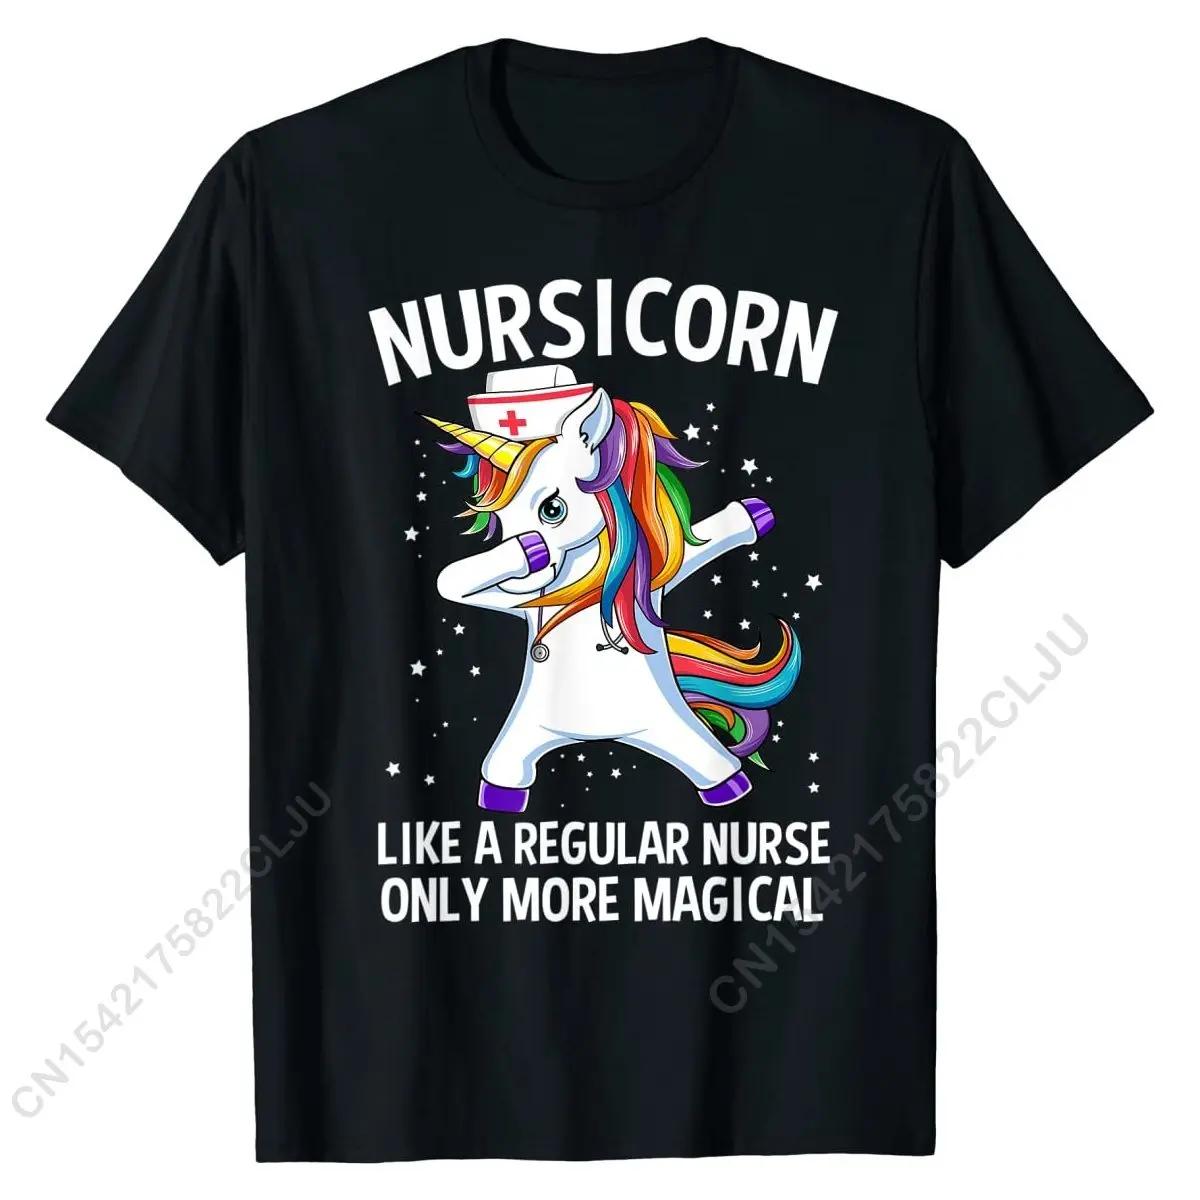 Вытирающий Единорог Nursicorn, Забавная футболка медсестры, футболки, Повседневные хлопковые мужские футболки, дизайн - 4